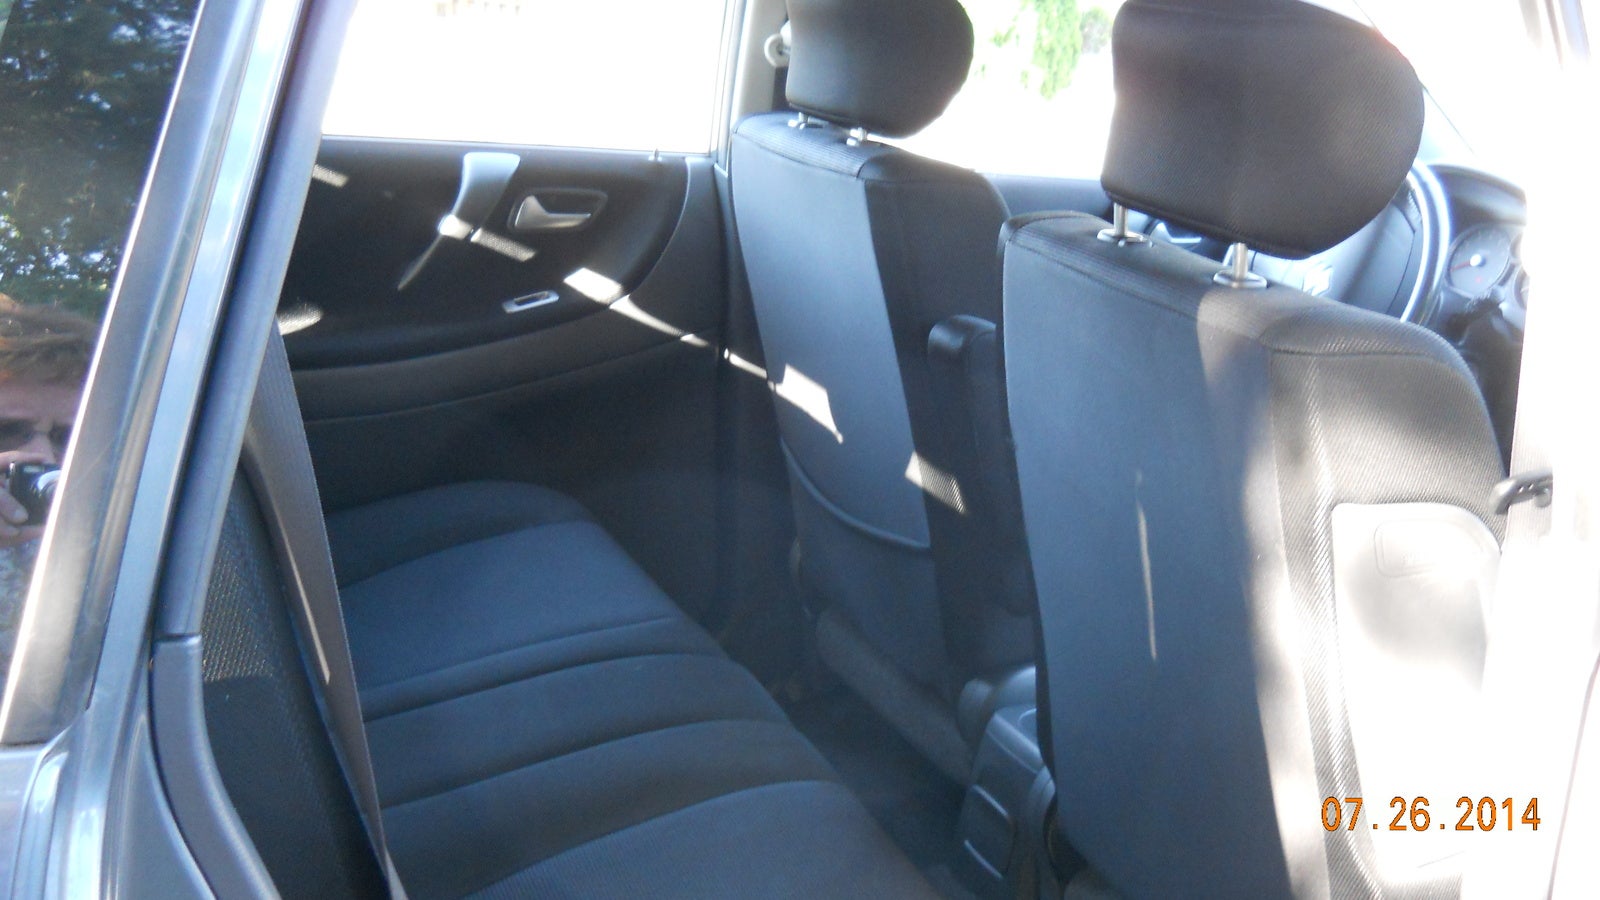 Picture of 2006 Suzuki Aerio SX Premium, interior